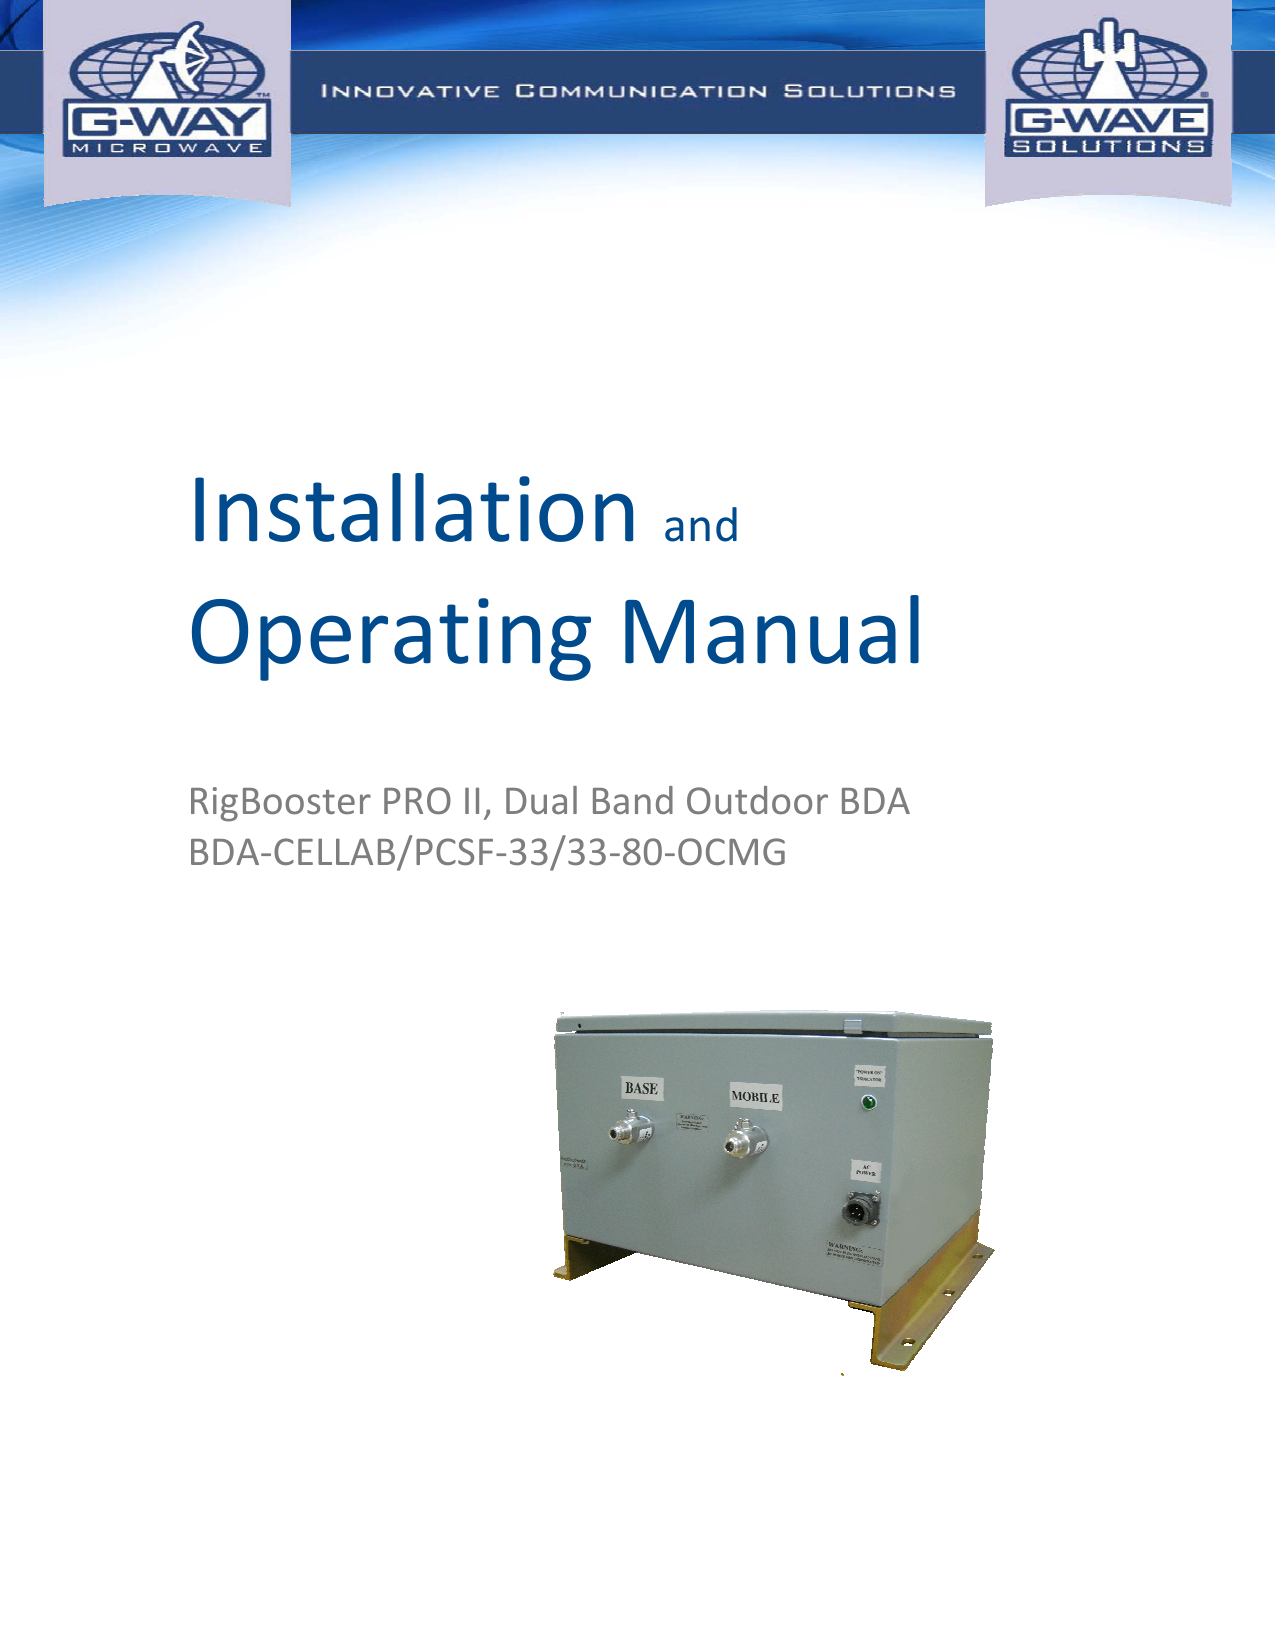   InstallationandOperatingManual  RigBoosterPROII,DualBandOutdoorBDABDA‐CELLAB/PCSF‐33/33‐80‐OCMG